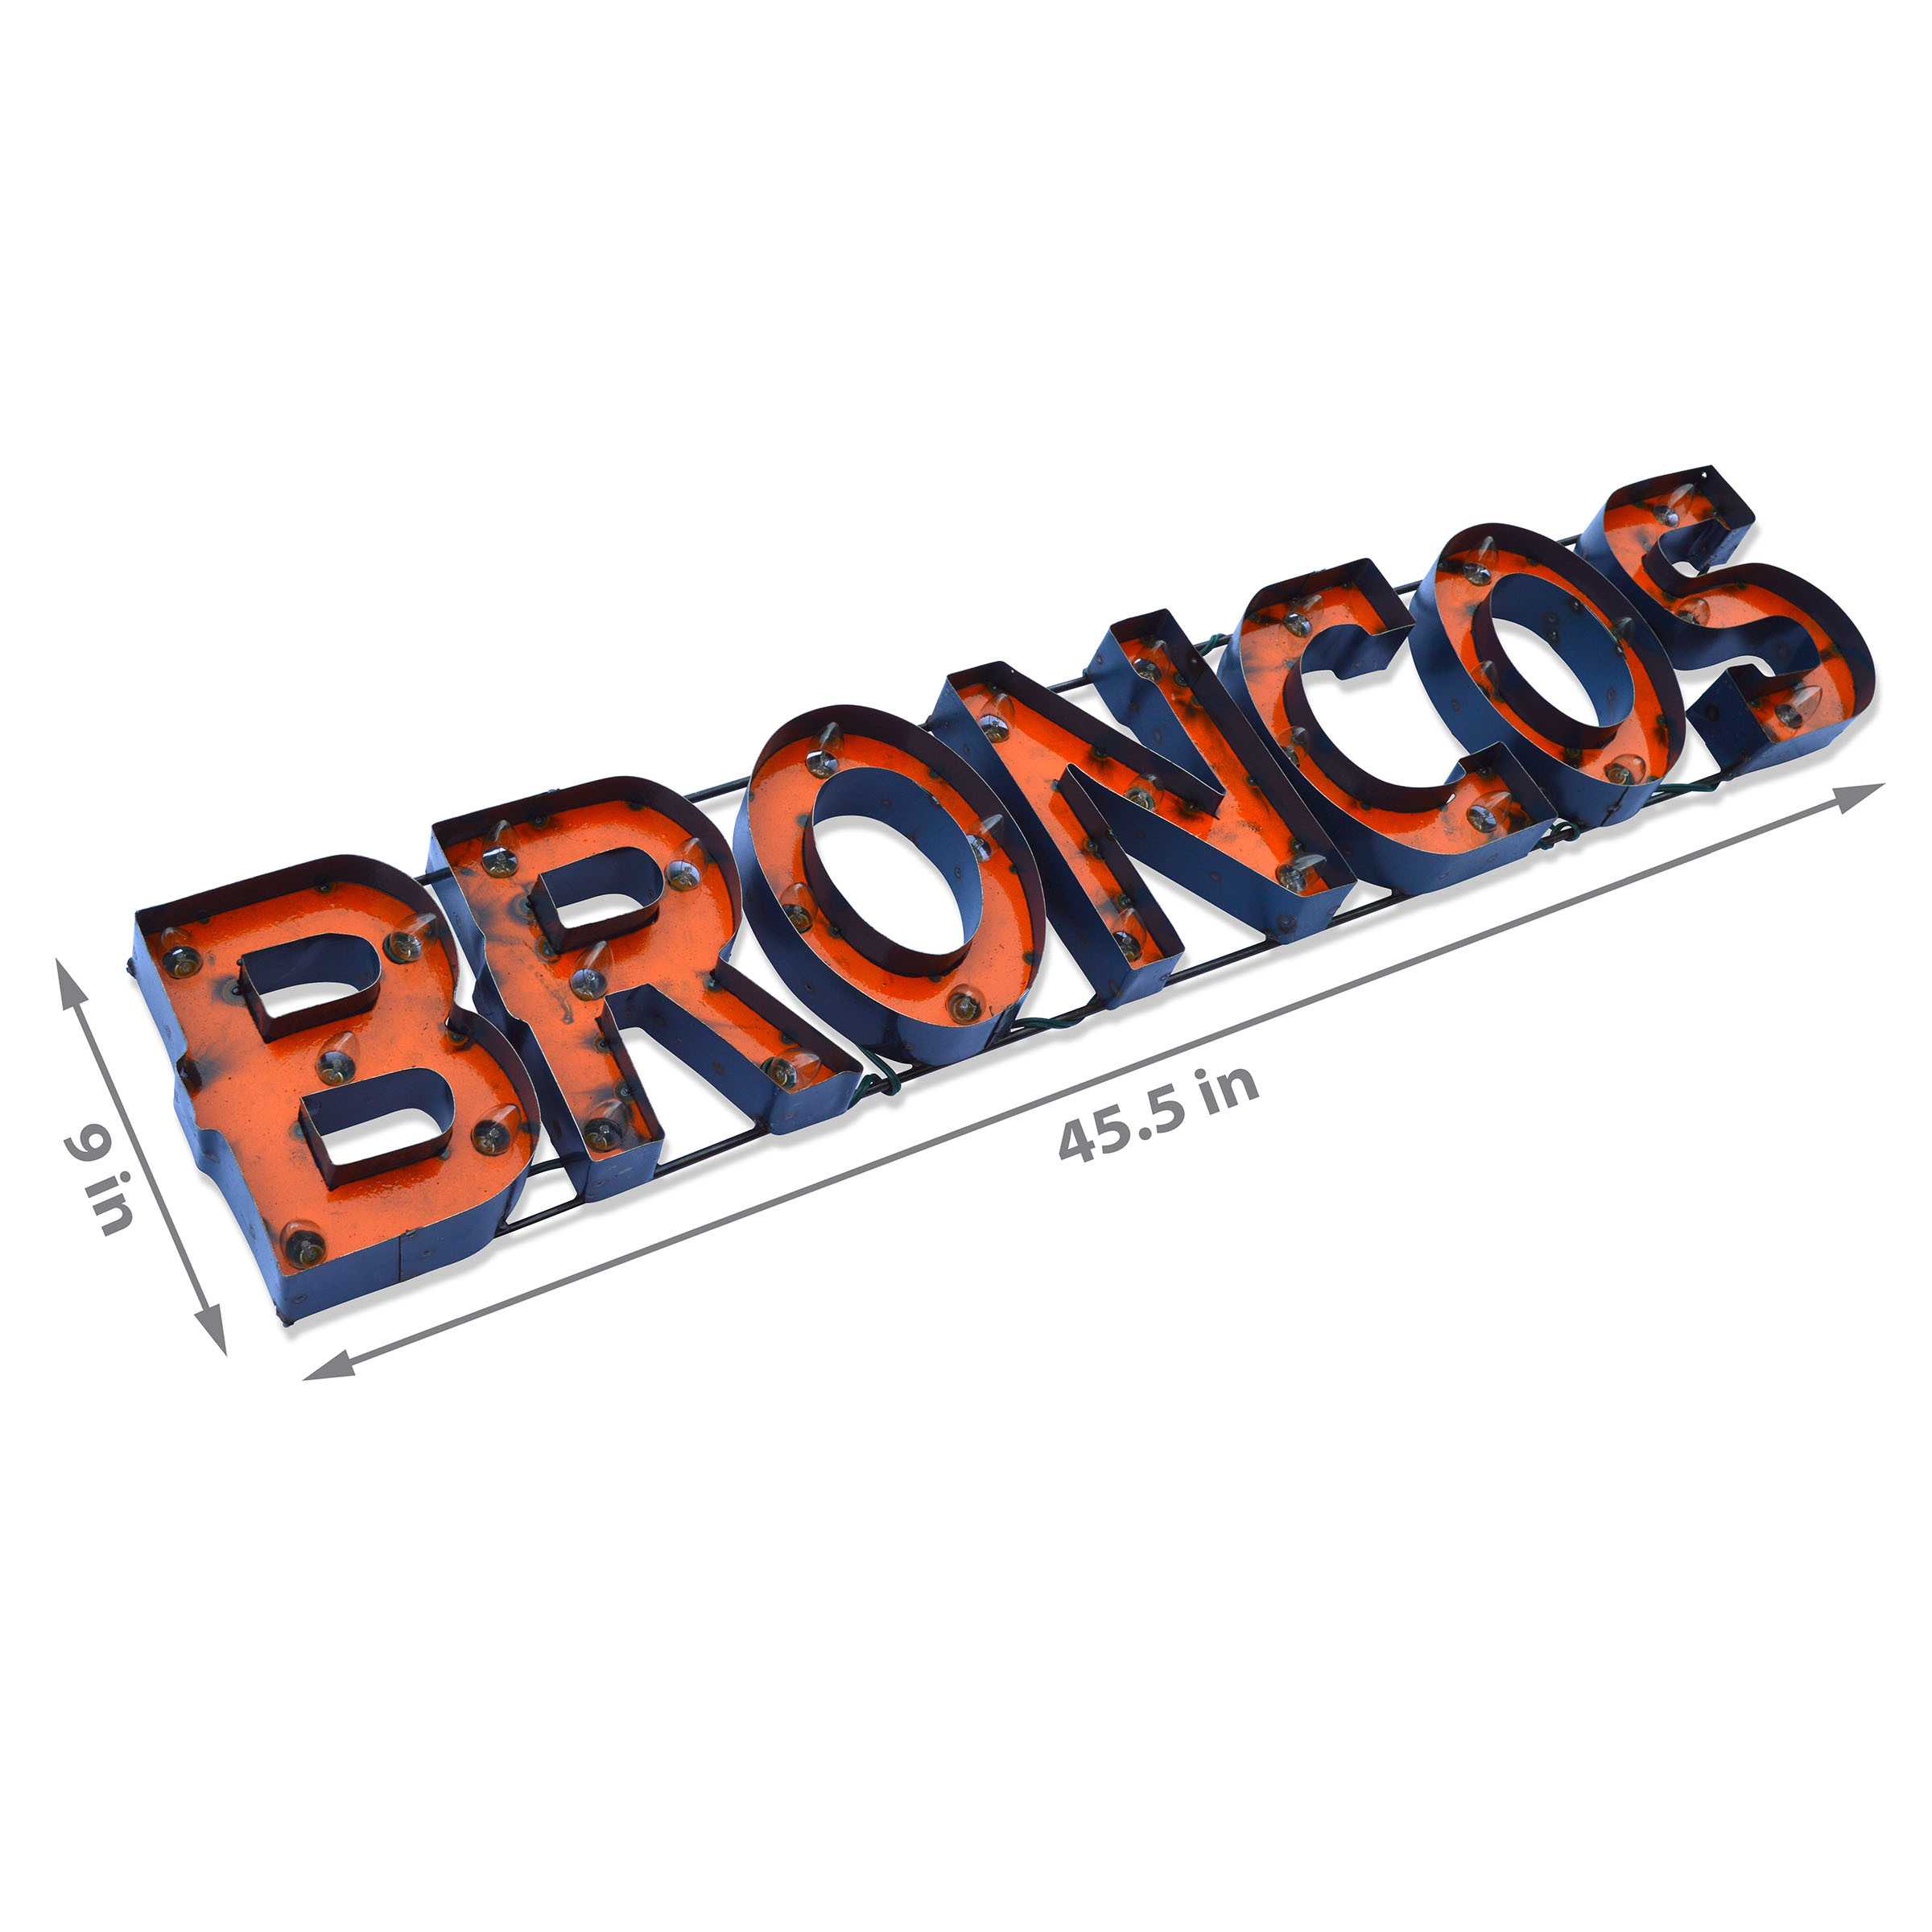 Denver Broncos Lighted Recycled Metal Sign